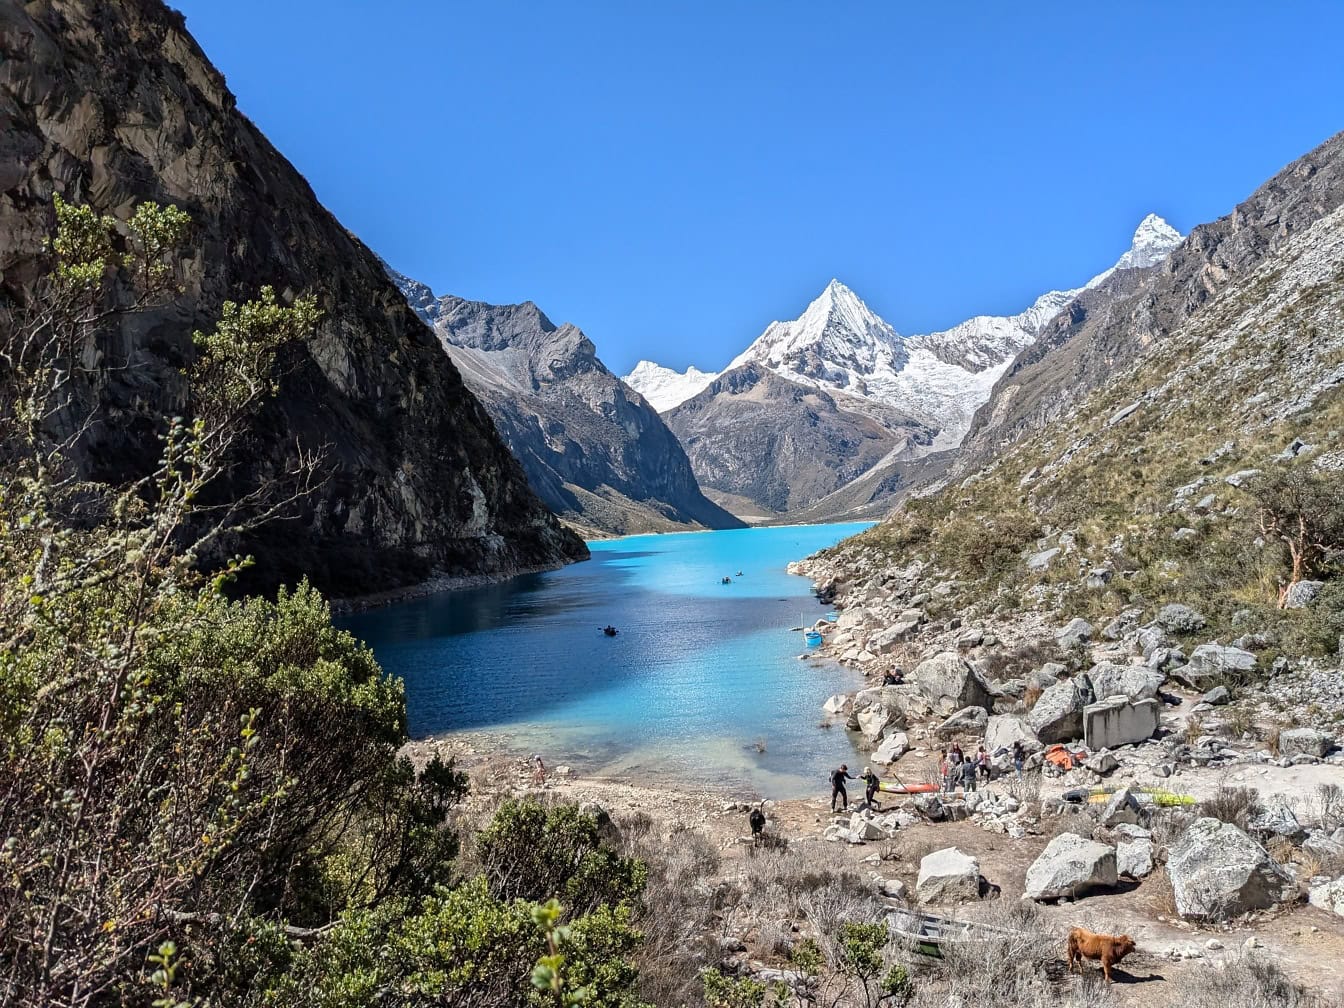 Campingplads ved bredden af søen Parón ved Cordillera Blanca i Andesbjergene i Peru, naturskøn udsigt over Latinamerika